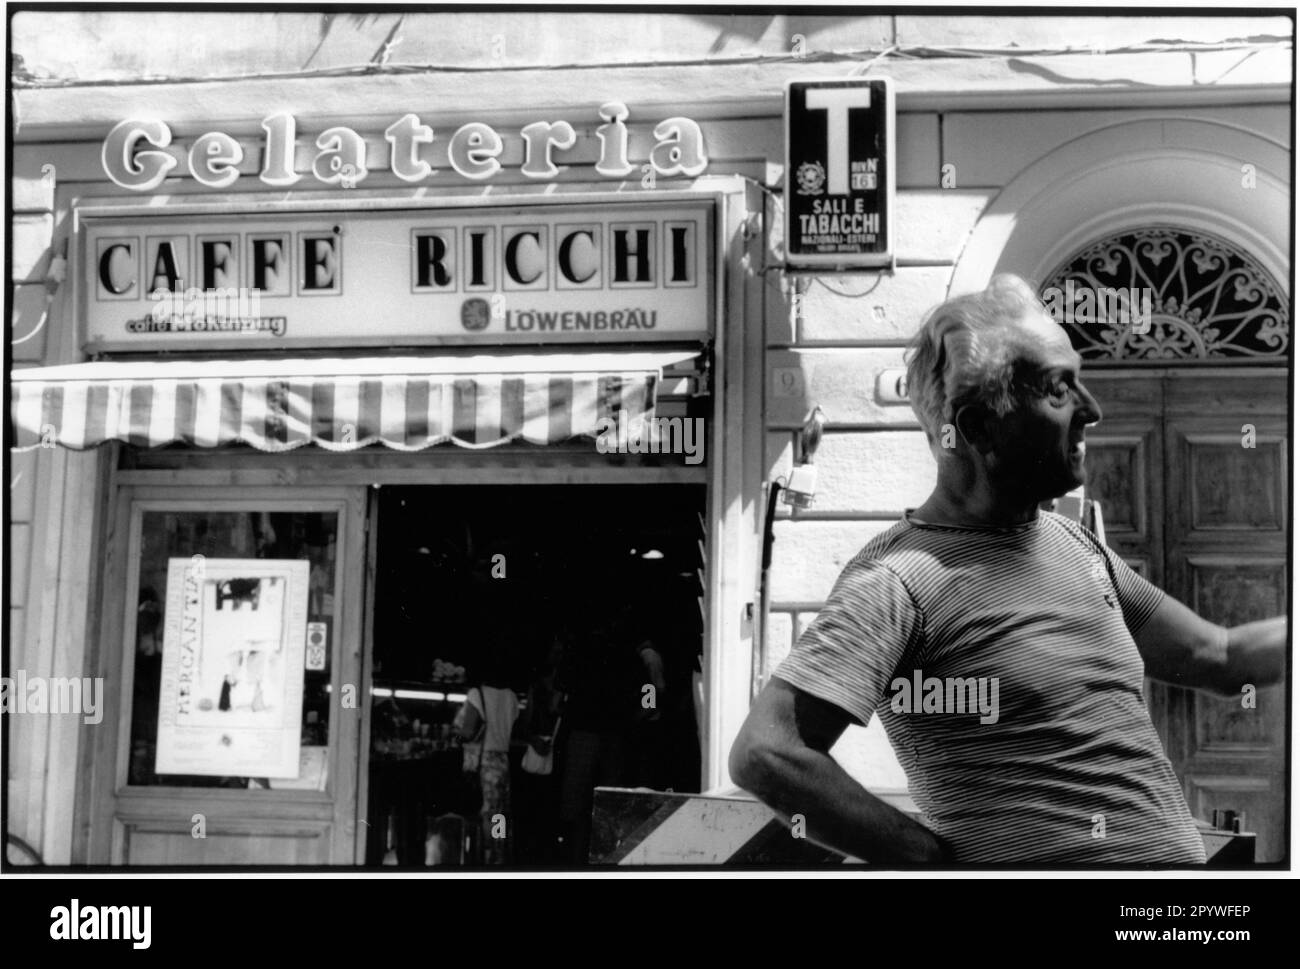 Florenz, Florenz (Toskana, Italien). Blick auf die Straße: Caffé Ricchi, Gelateria und Sali e Tabacchi, vor ihnen ein Mann auf der Straße. Straßenszene, schwarz-weiß. Foto, 1992. Stockfoto